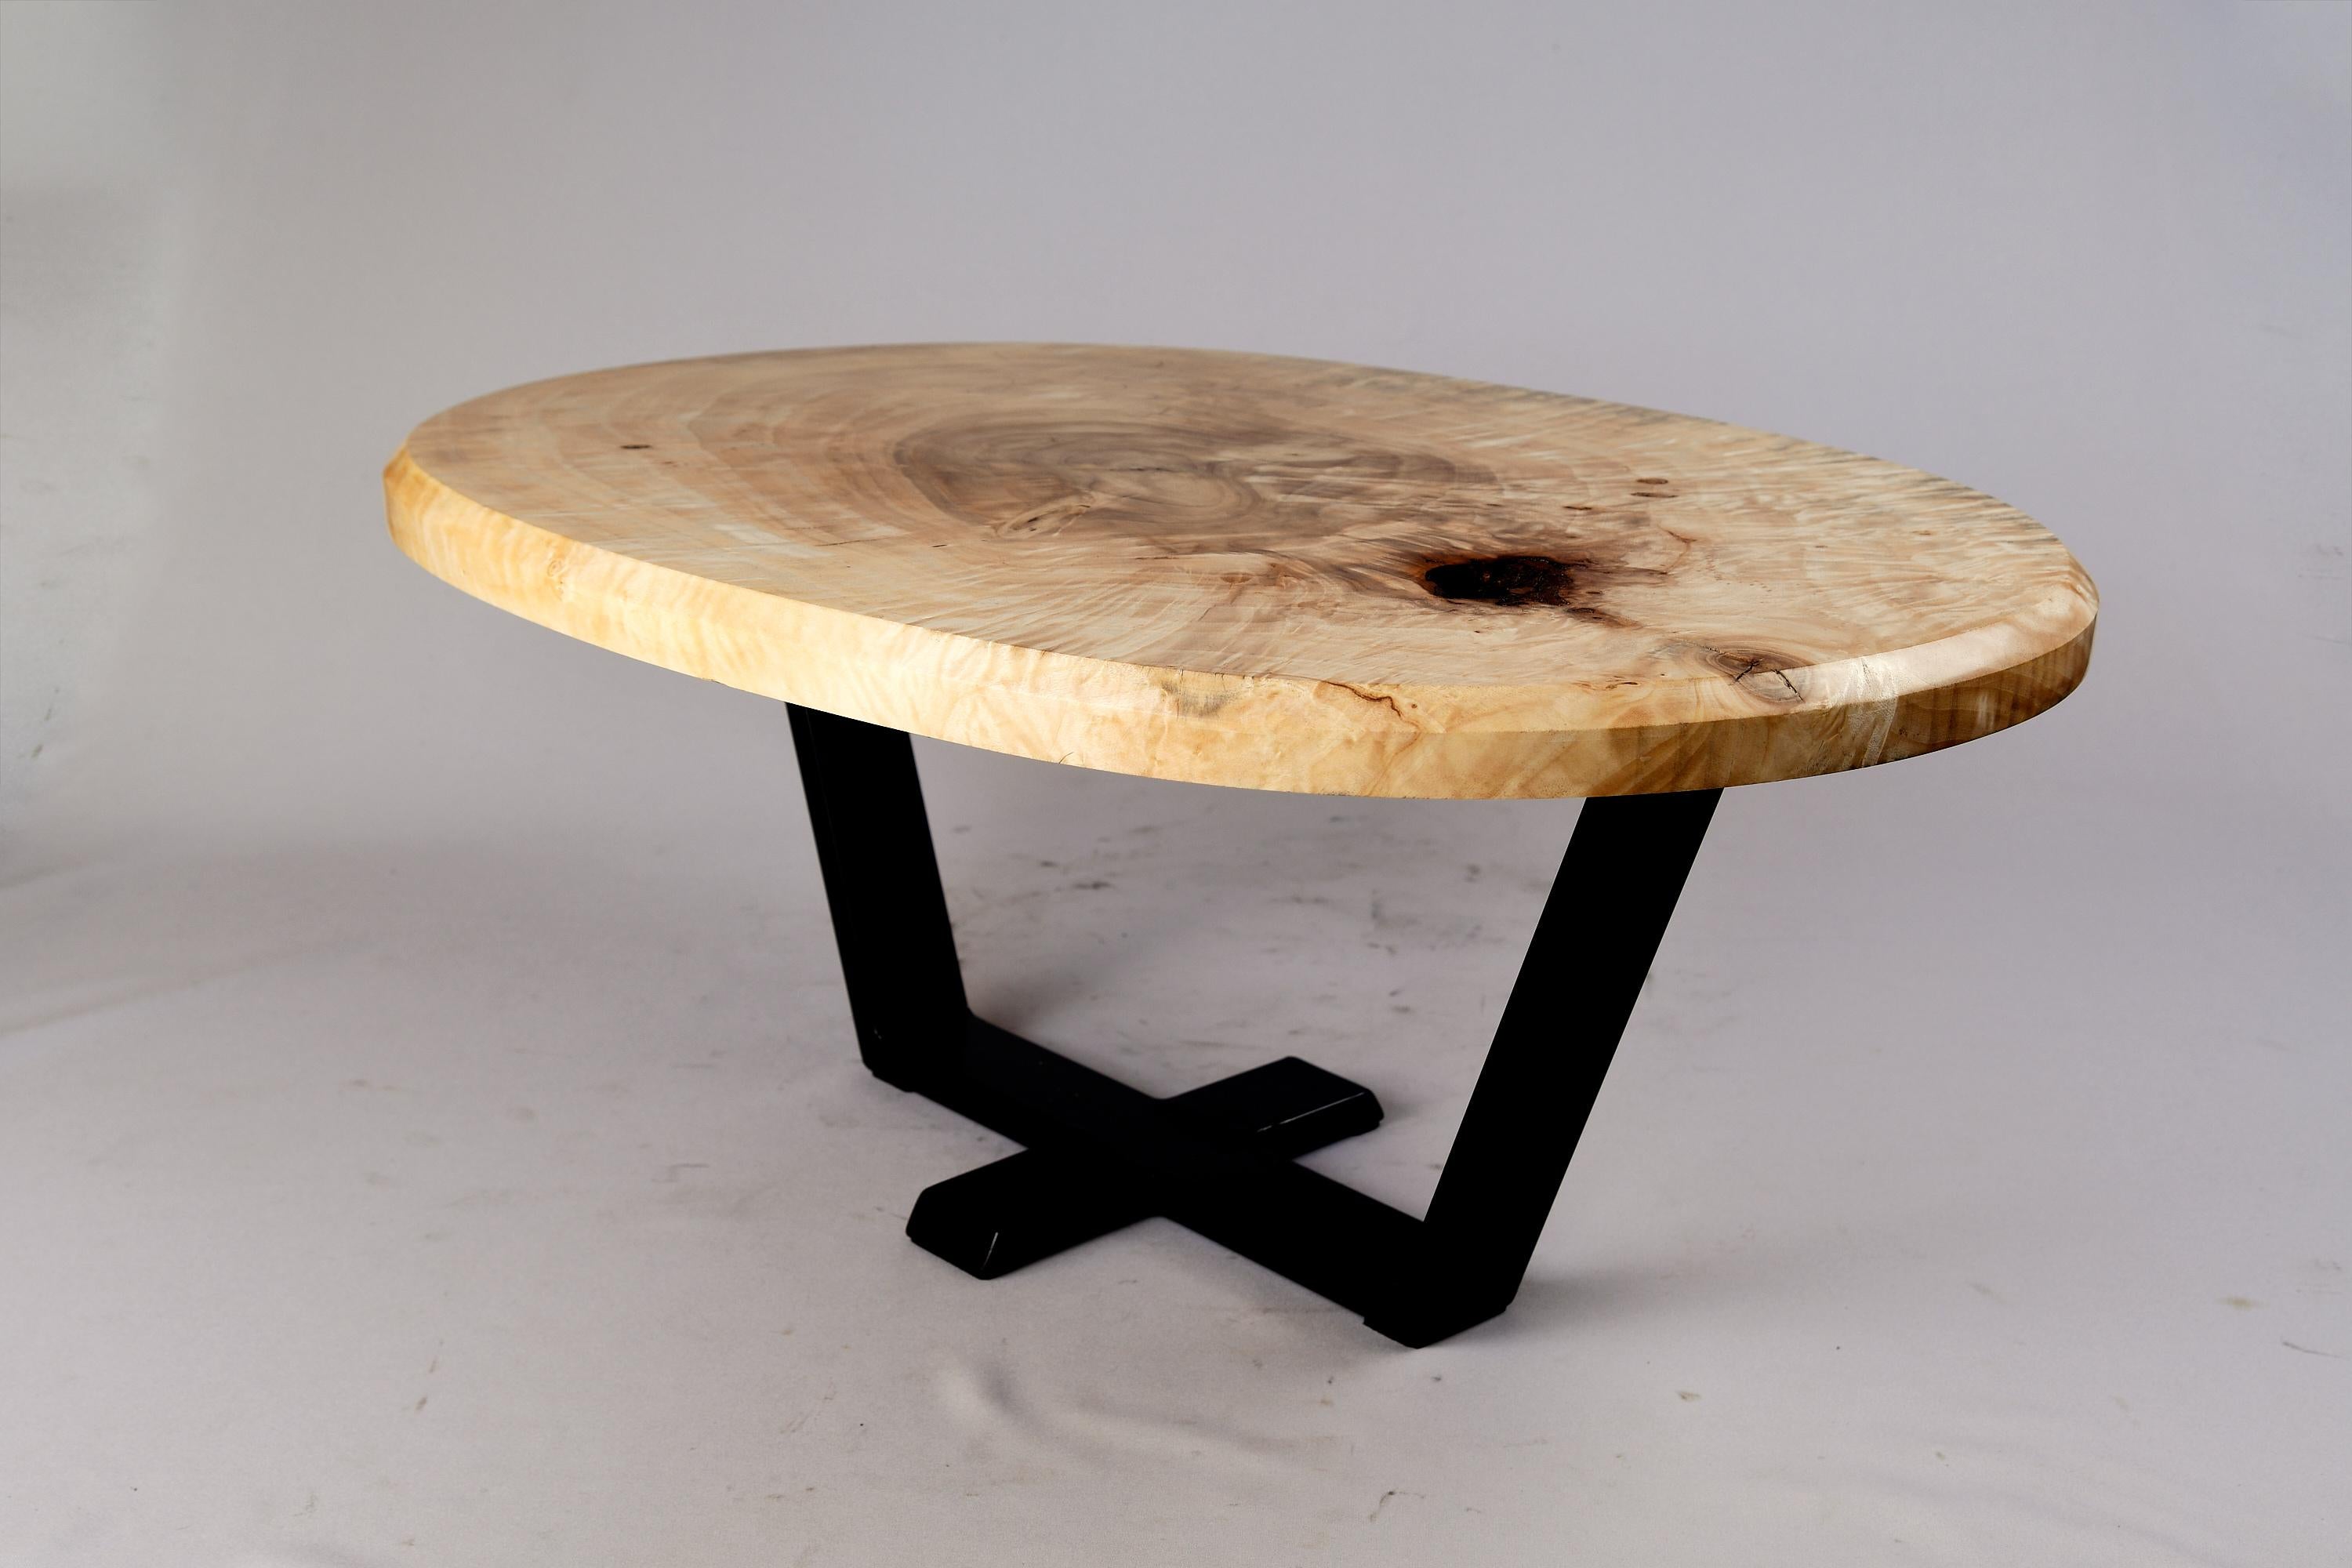 Original Contemporary Design, Burnt Oak with Steel, Unique Side Table, Logniture In New Condition For Sale In Stara Gradiška, HR